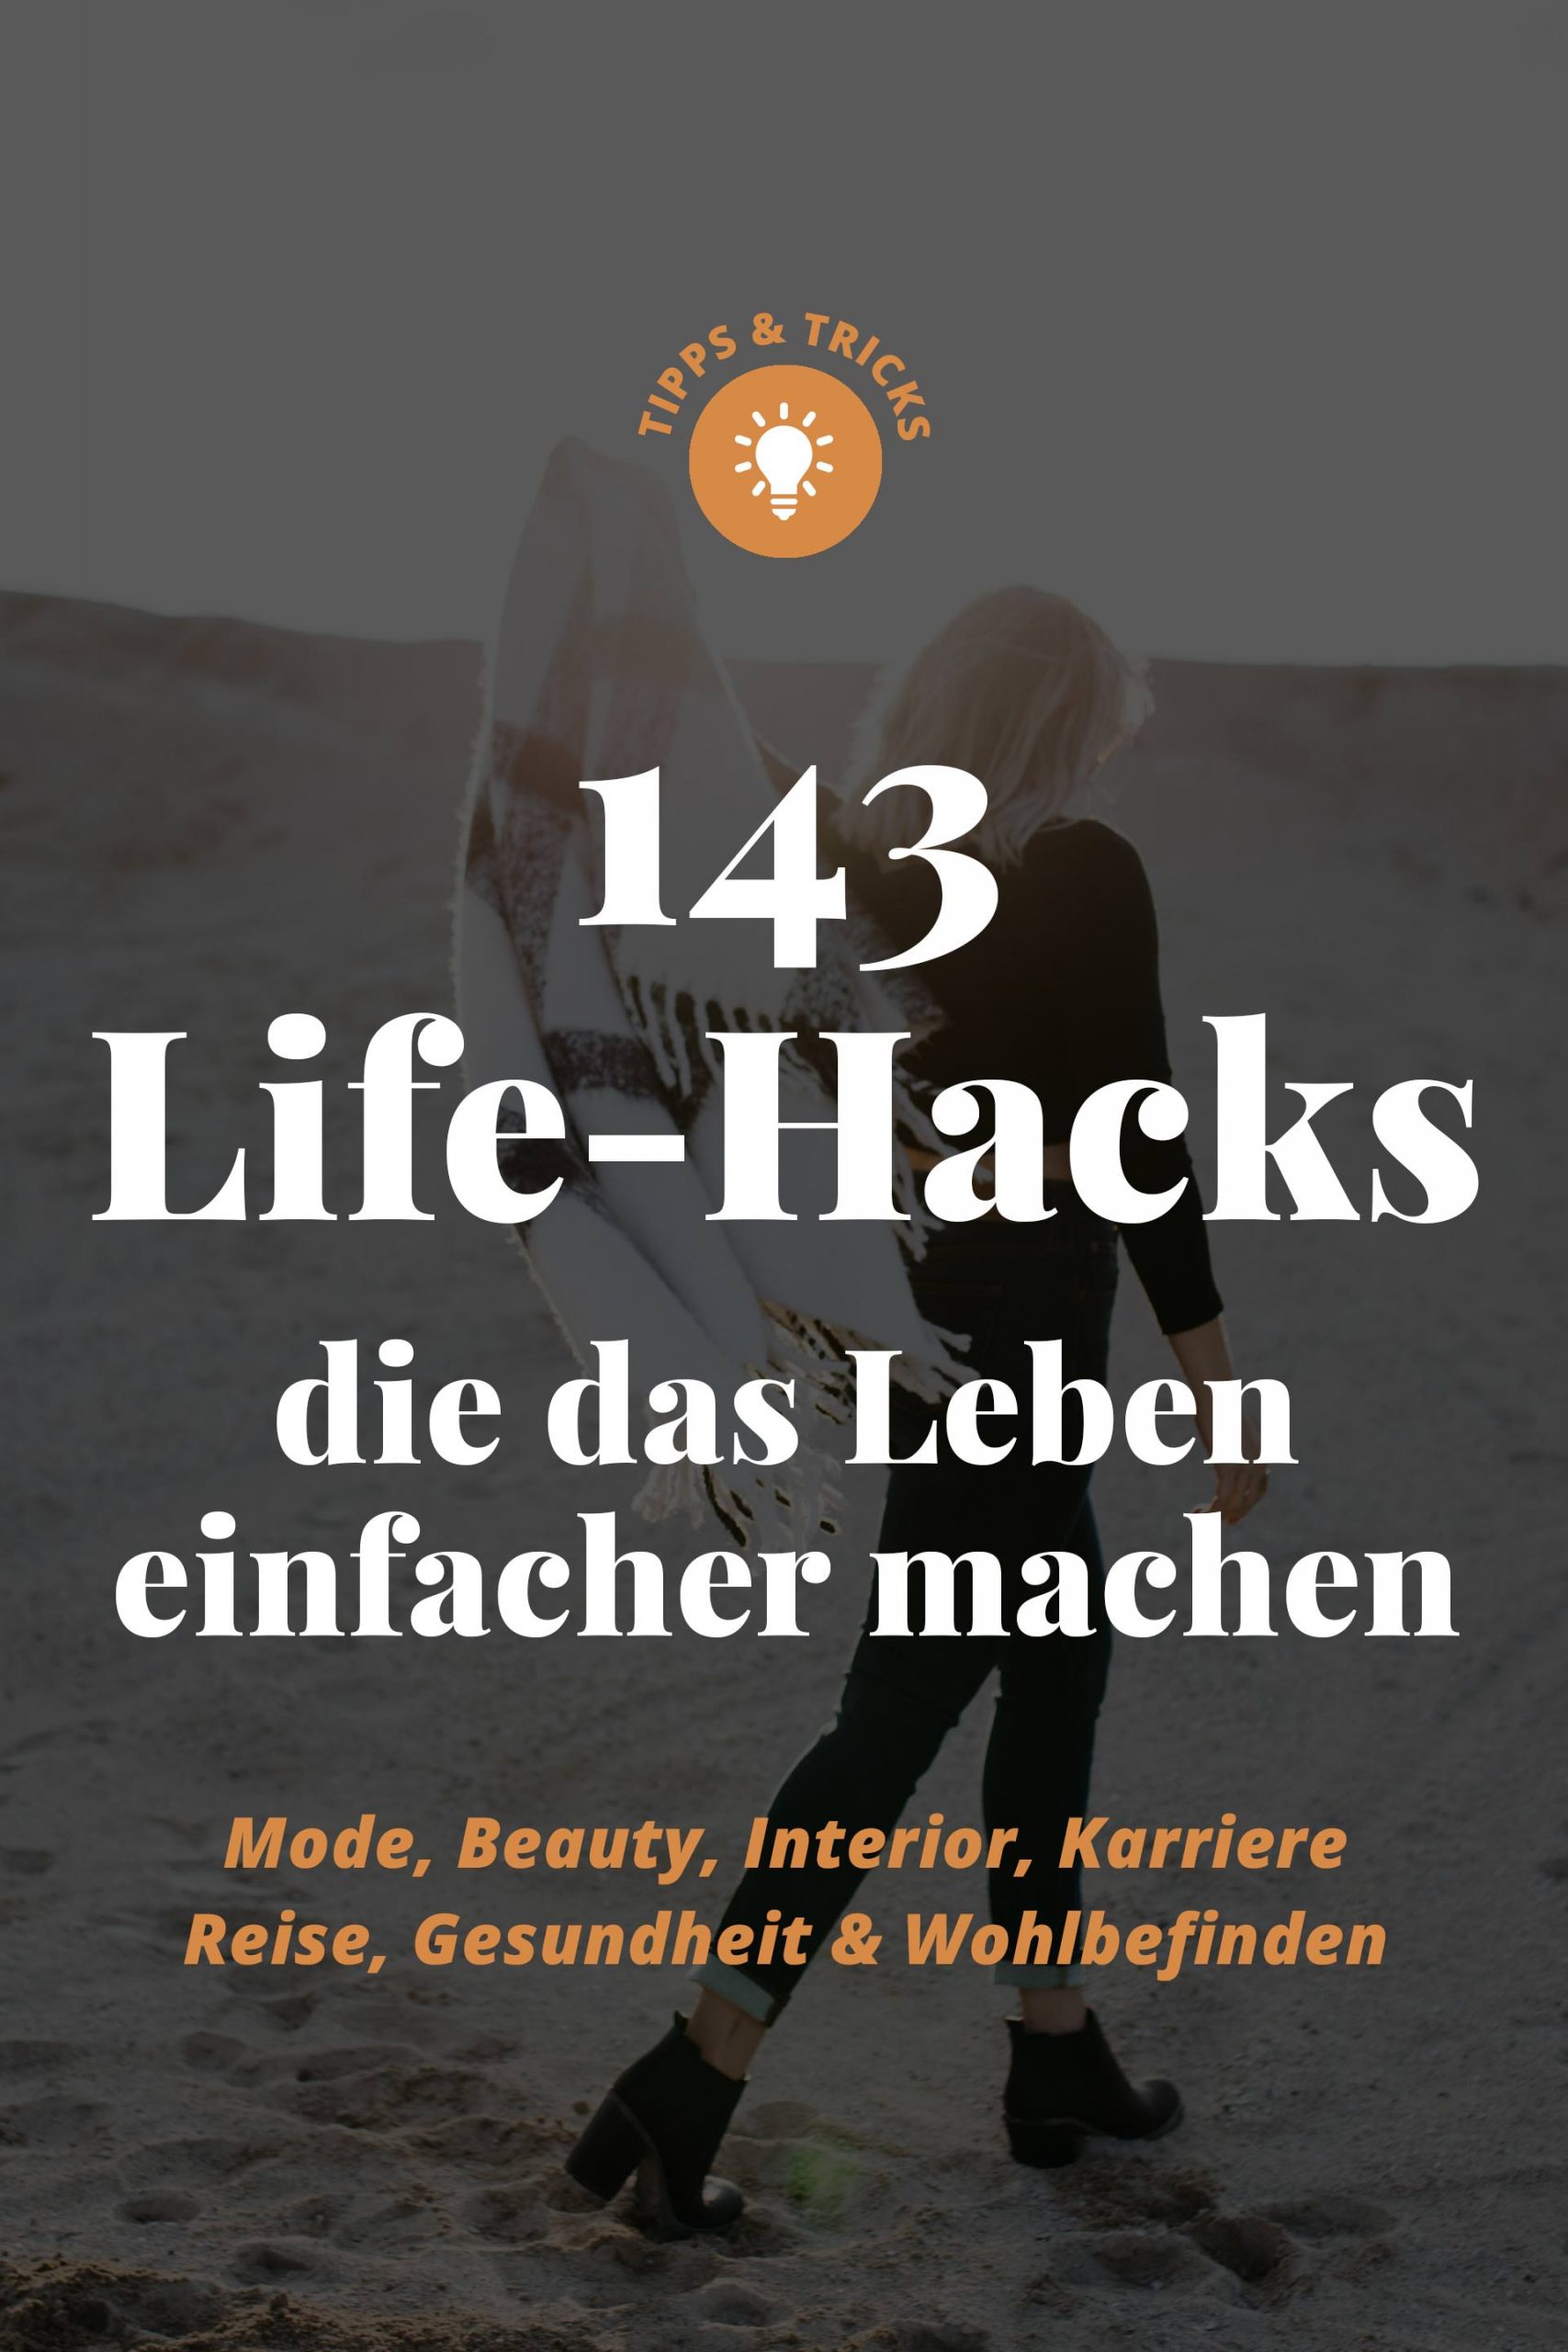 143 Life-Hacks, die das Leben einfacher machen! - Lifestyle Blog und  Mamablog aus Österreich